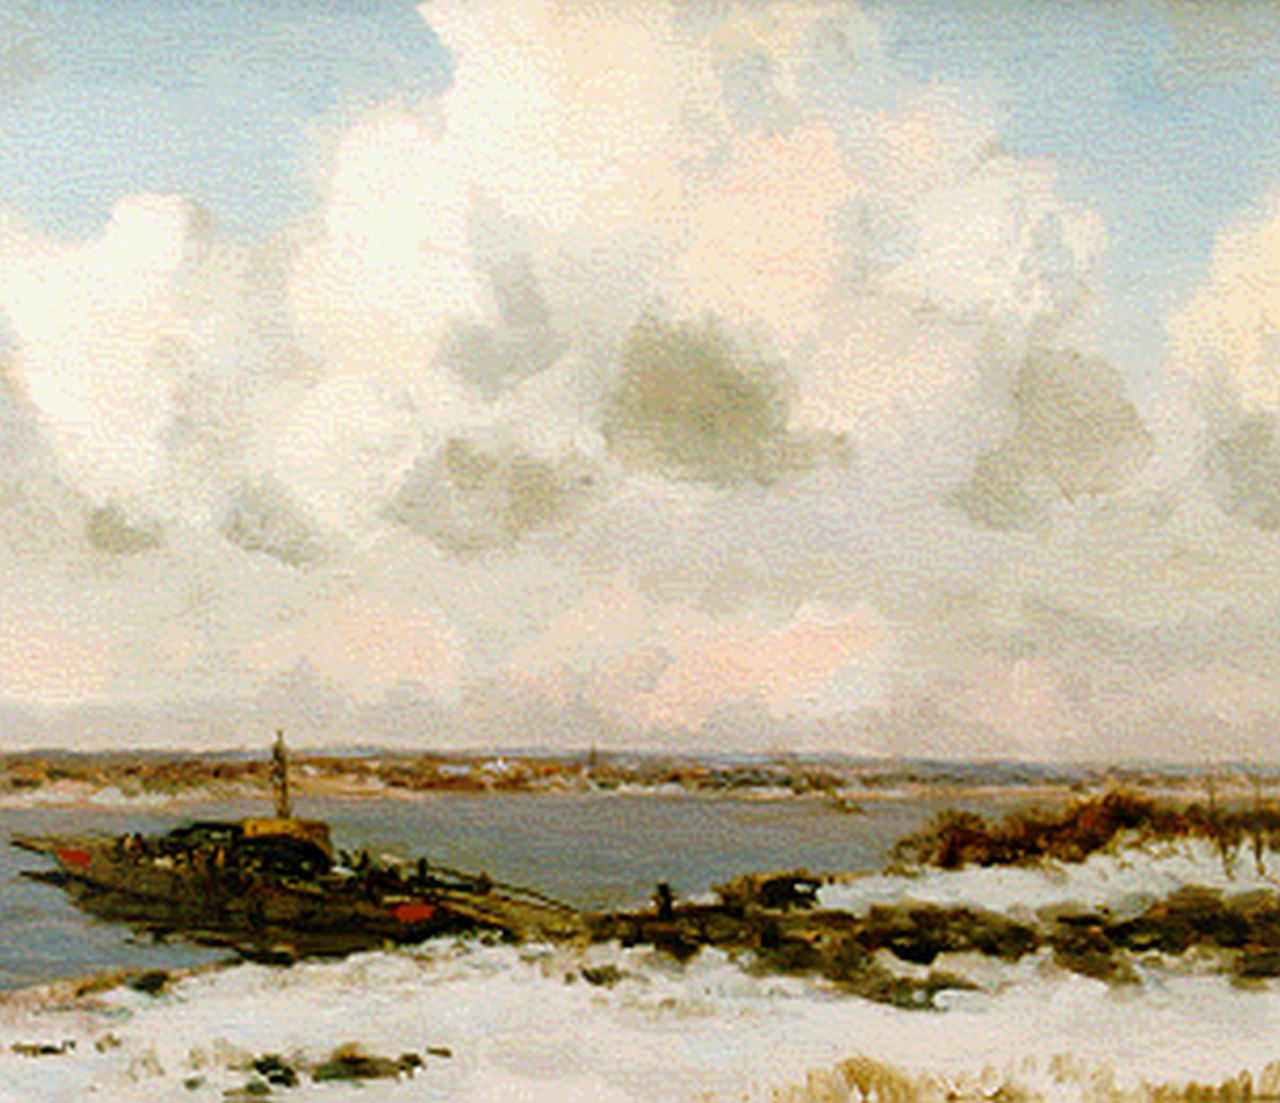 Jansen W.G.F.  | 'Willem' George Frederik Jansen, Overzetveer in de winter, olieverf op doek 60,5 x 90,5 cm, gesigneerd linksboven